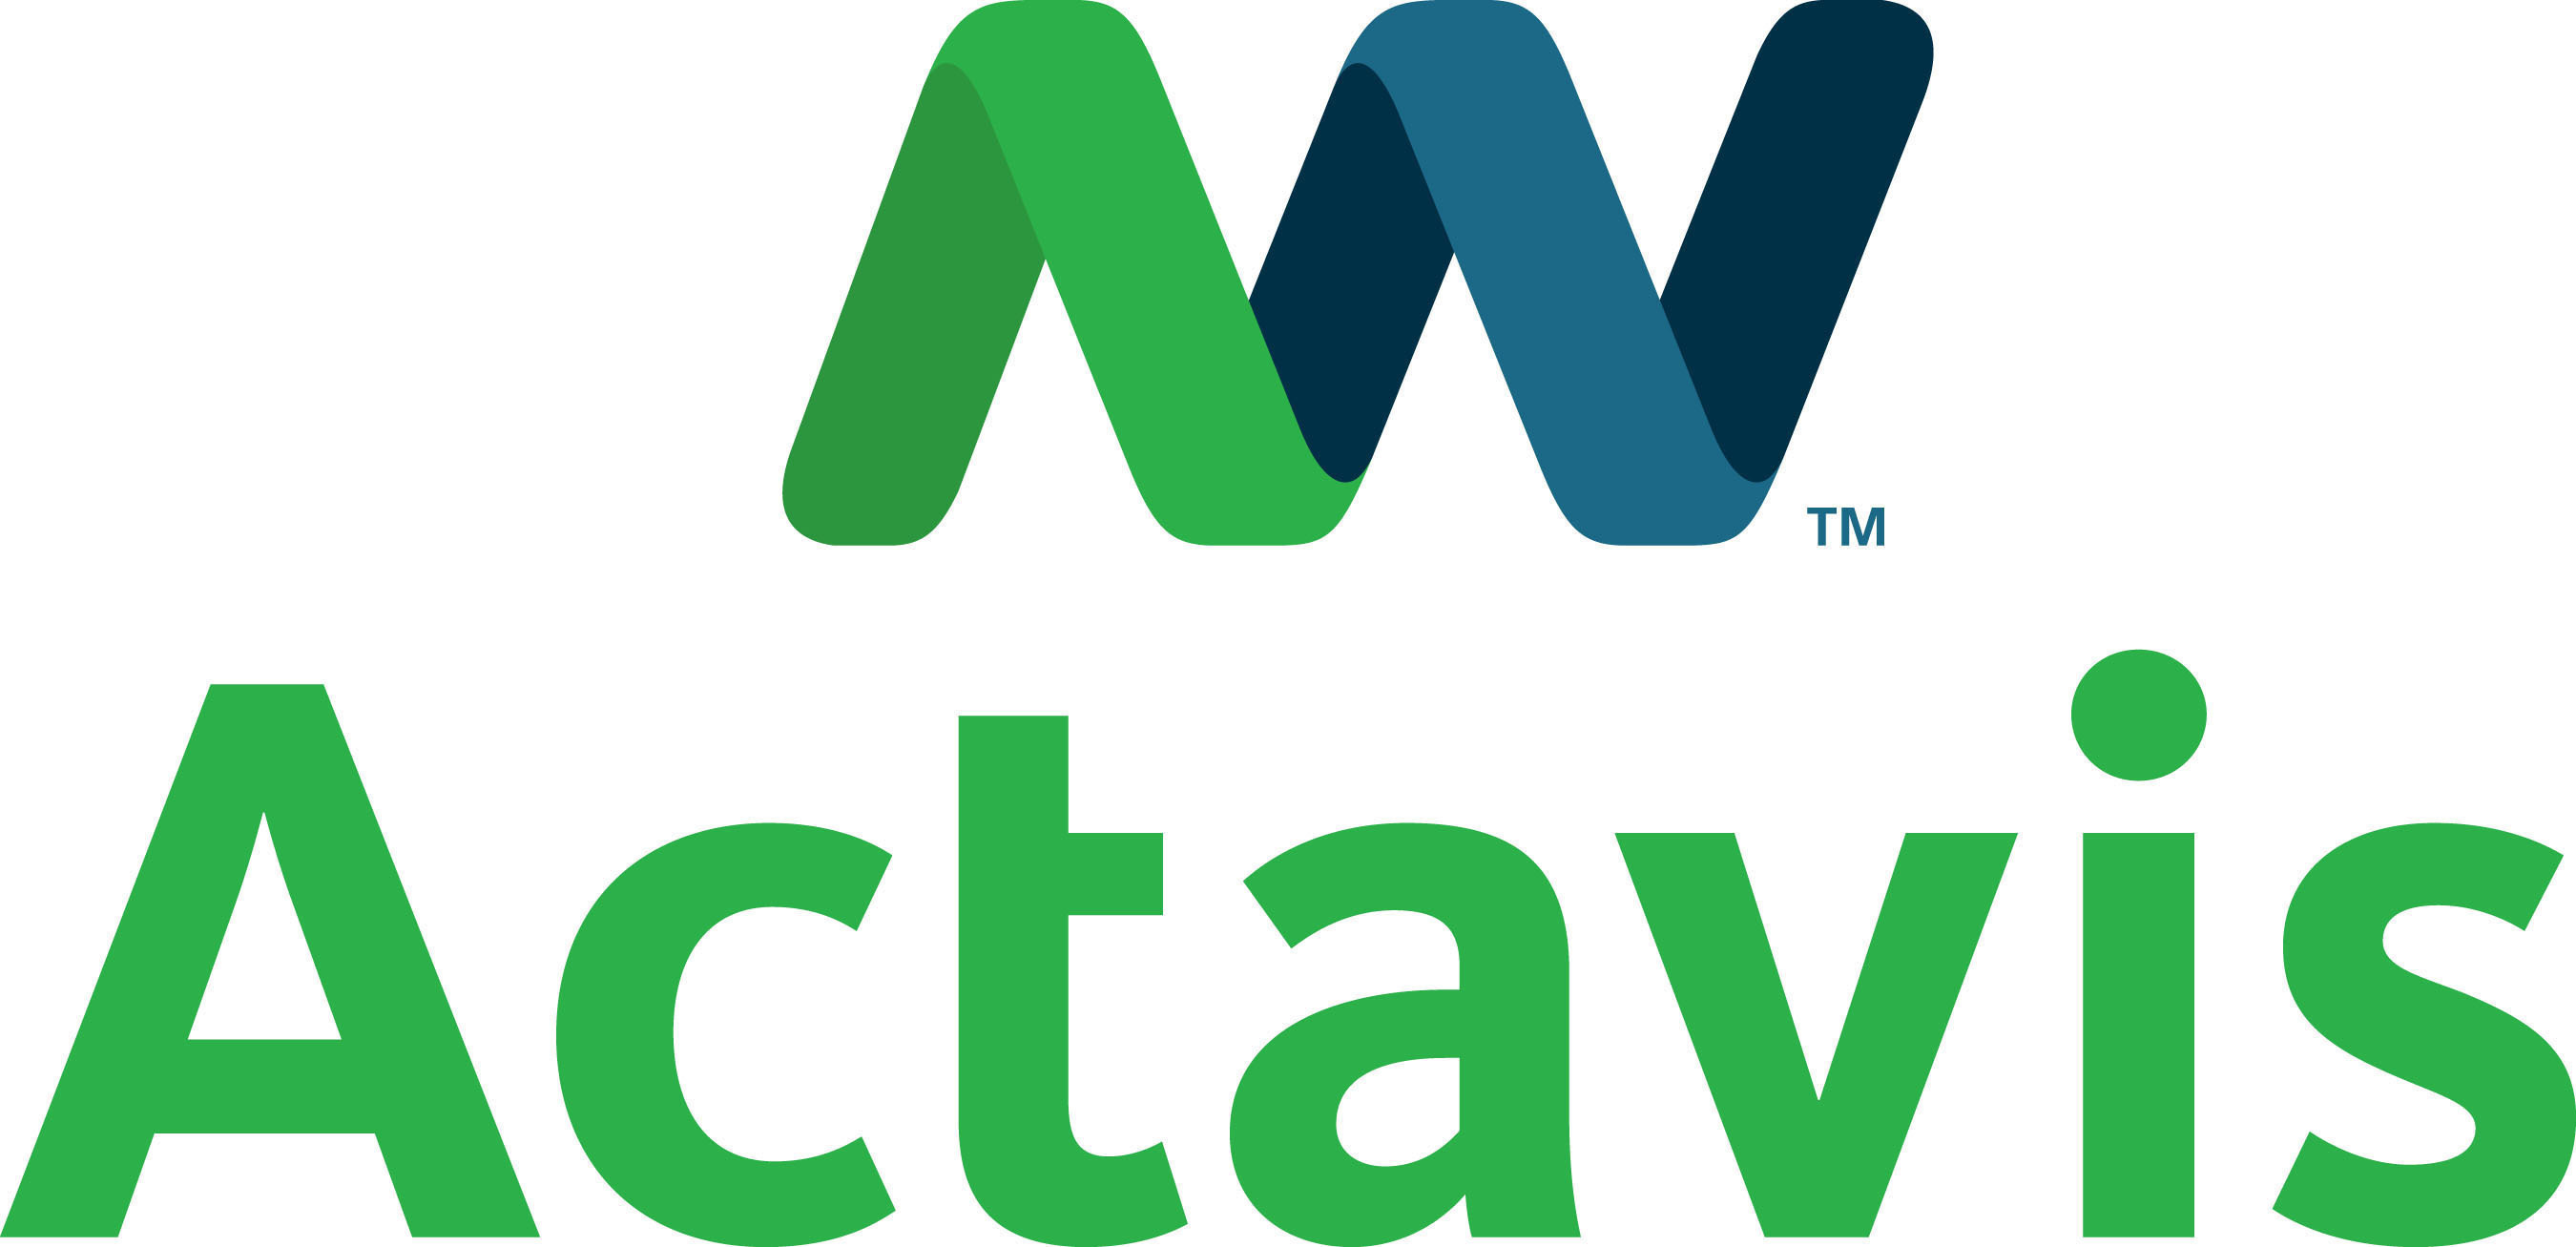 Actavis plc logo. (PRNewsFoto/Actavis plc) (PRNewsFoto/Actavis plc)